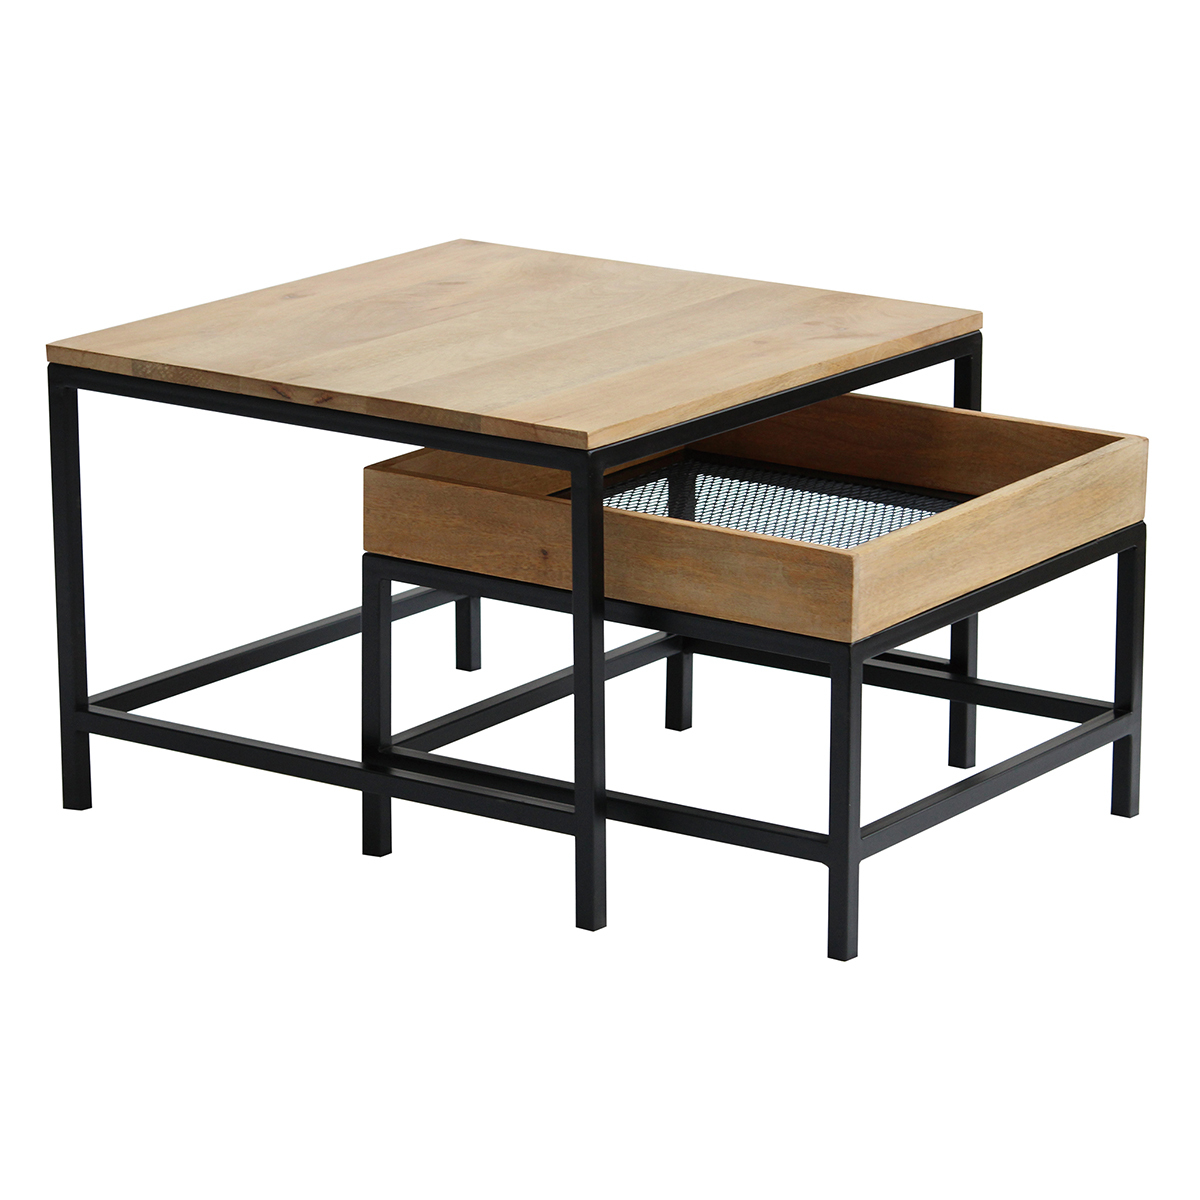 Tables basses gigognes carrées bois clair manguier massif et métal noir (lot de 2) RACK vue1